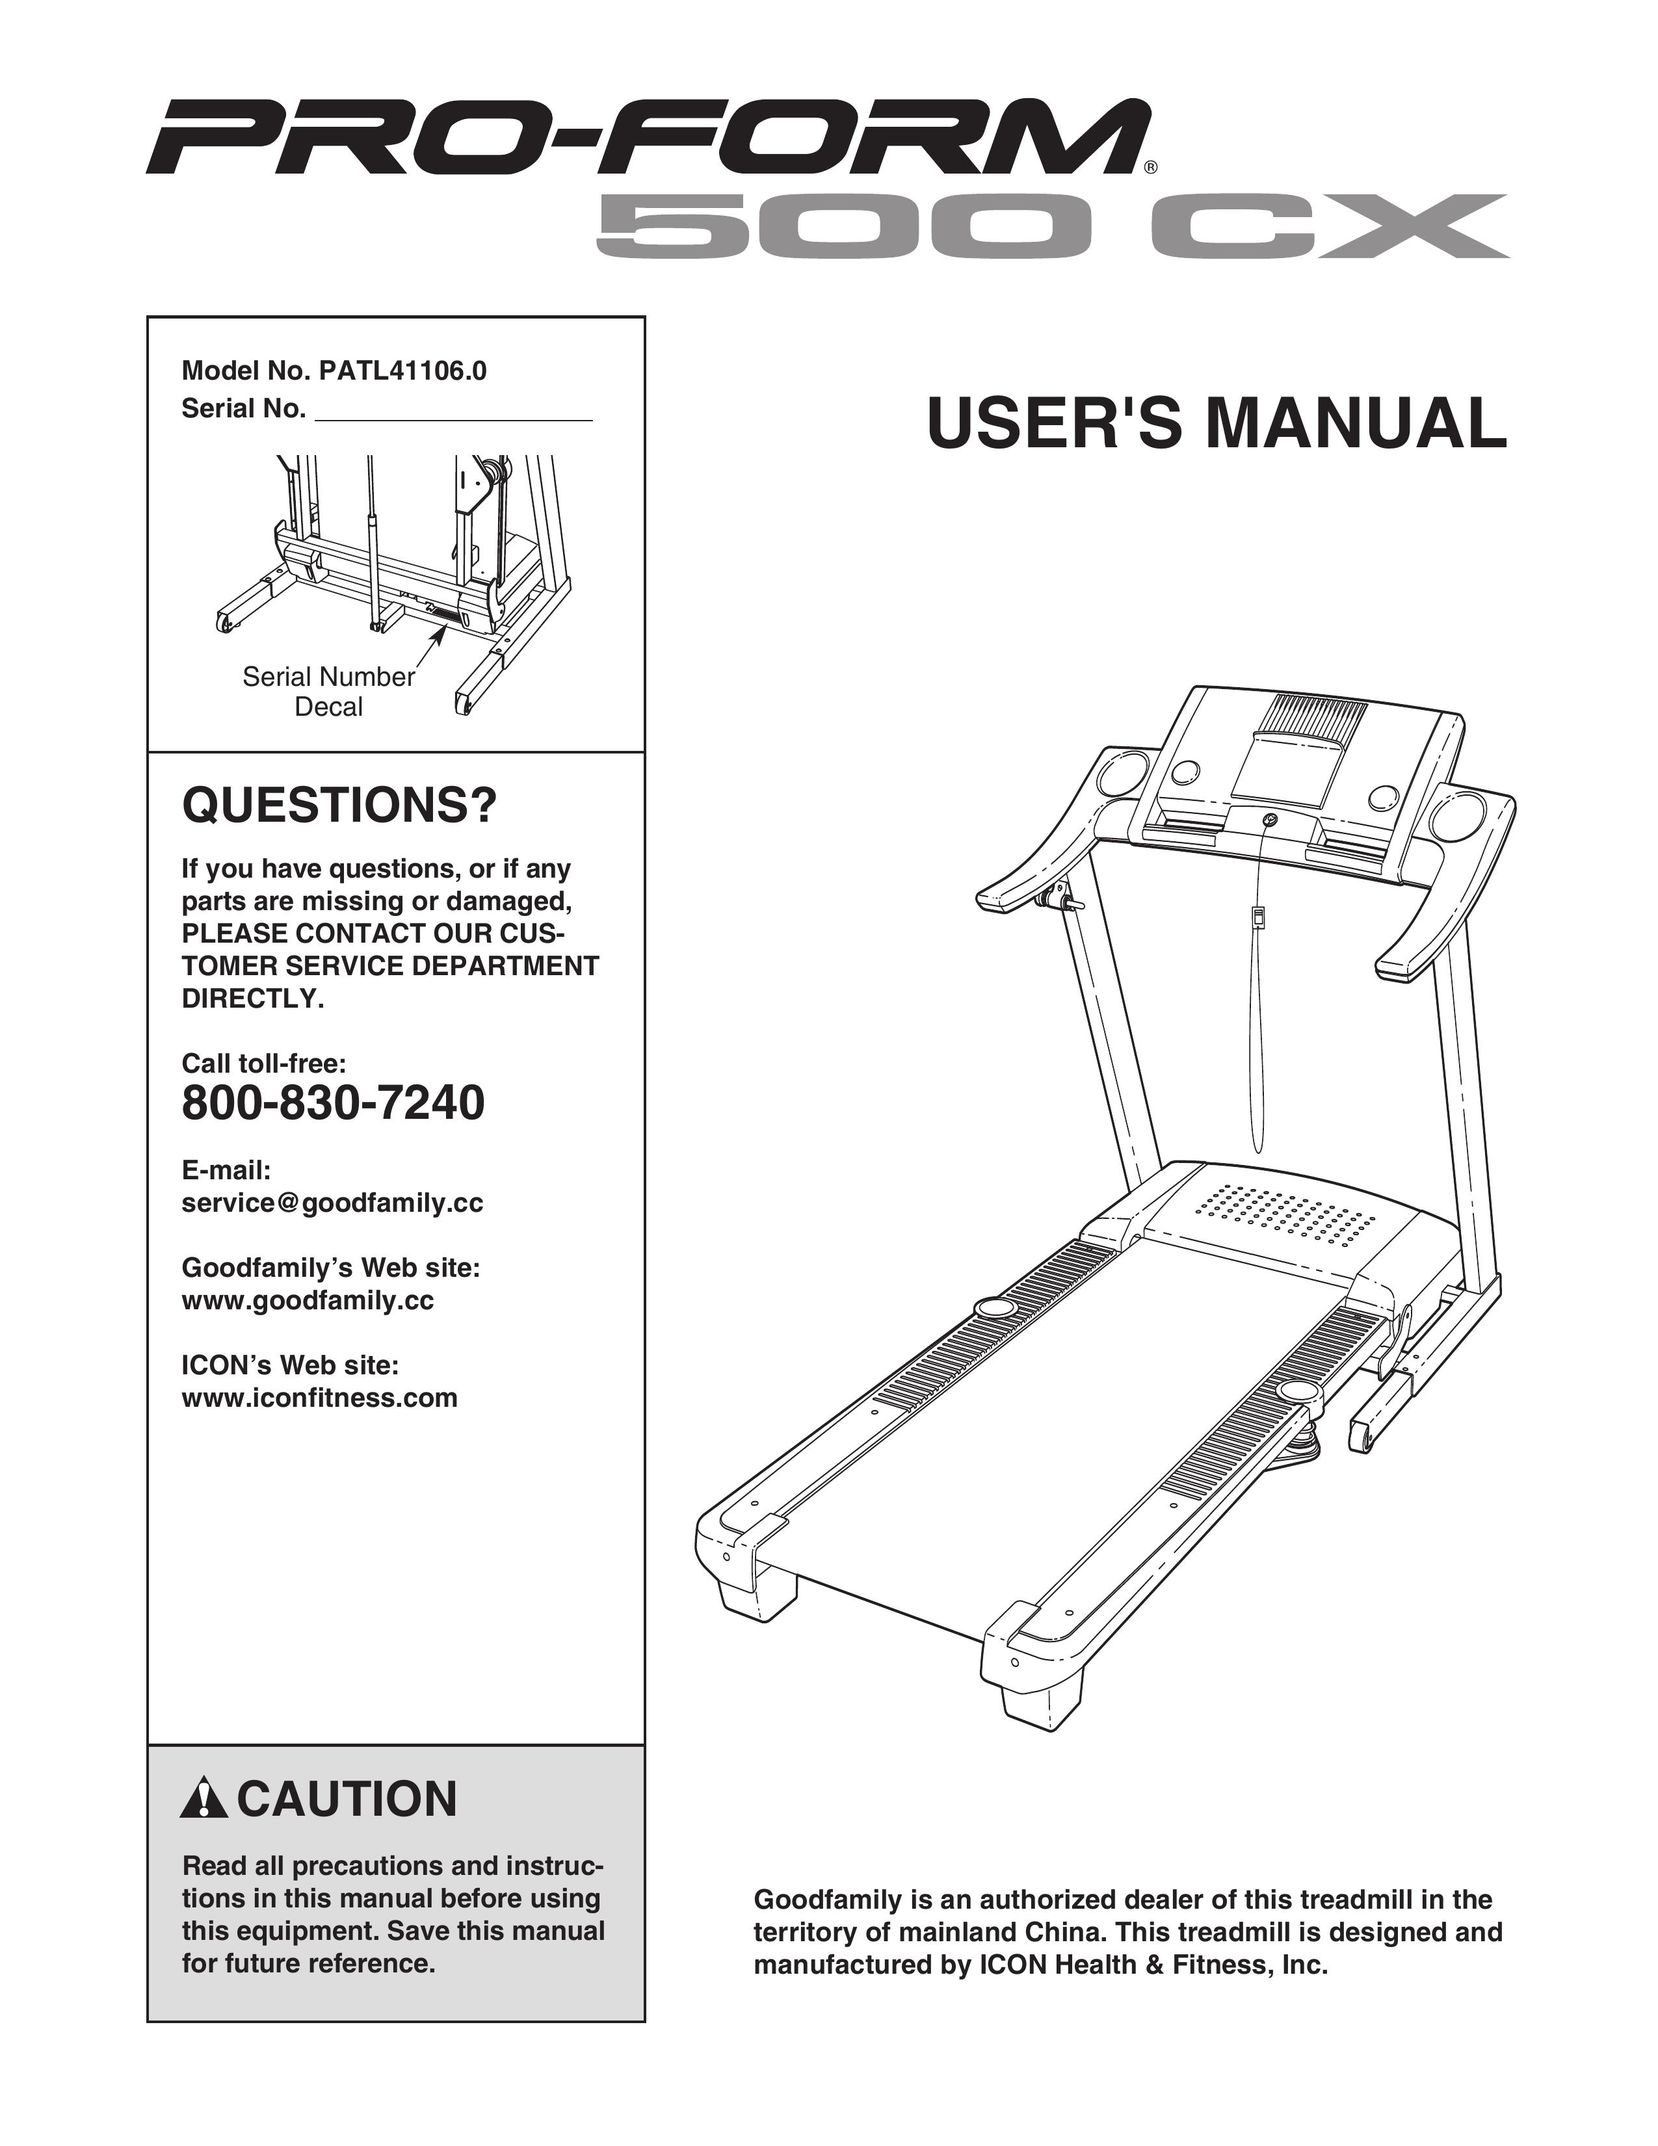 Inter-Tel PATL41106.0 Treadmill User Manual